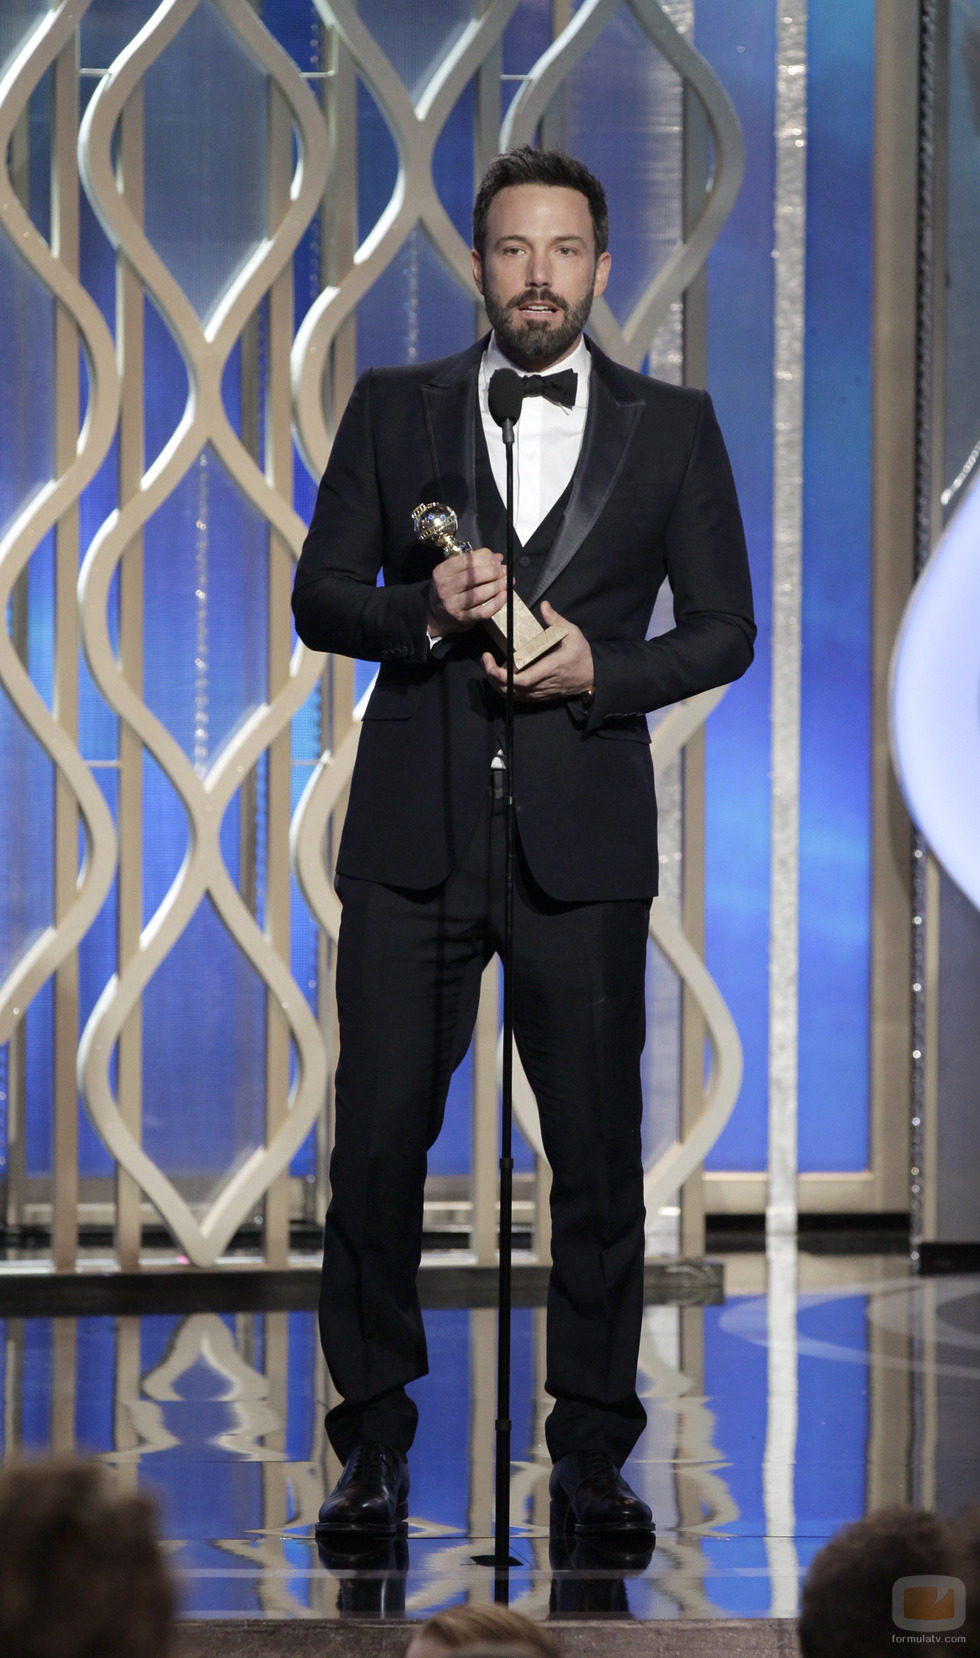 Ben Affleck, Mejor Director por "Argo" en los Globos de Oro 2013